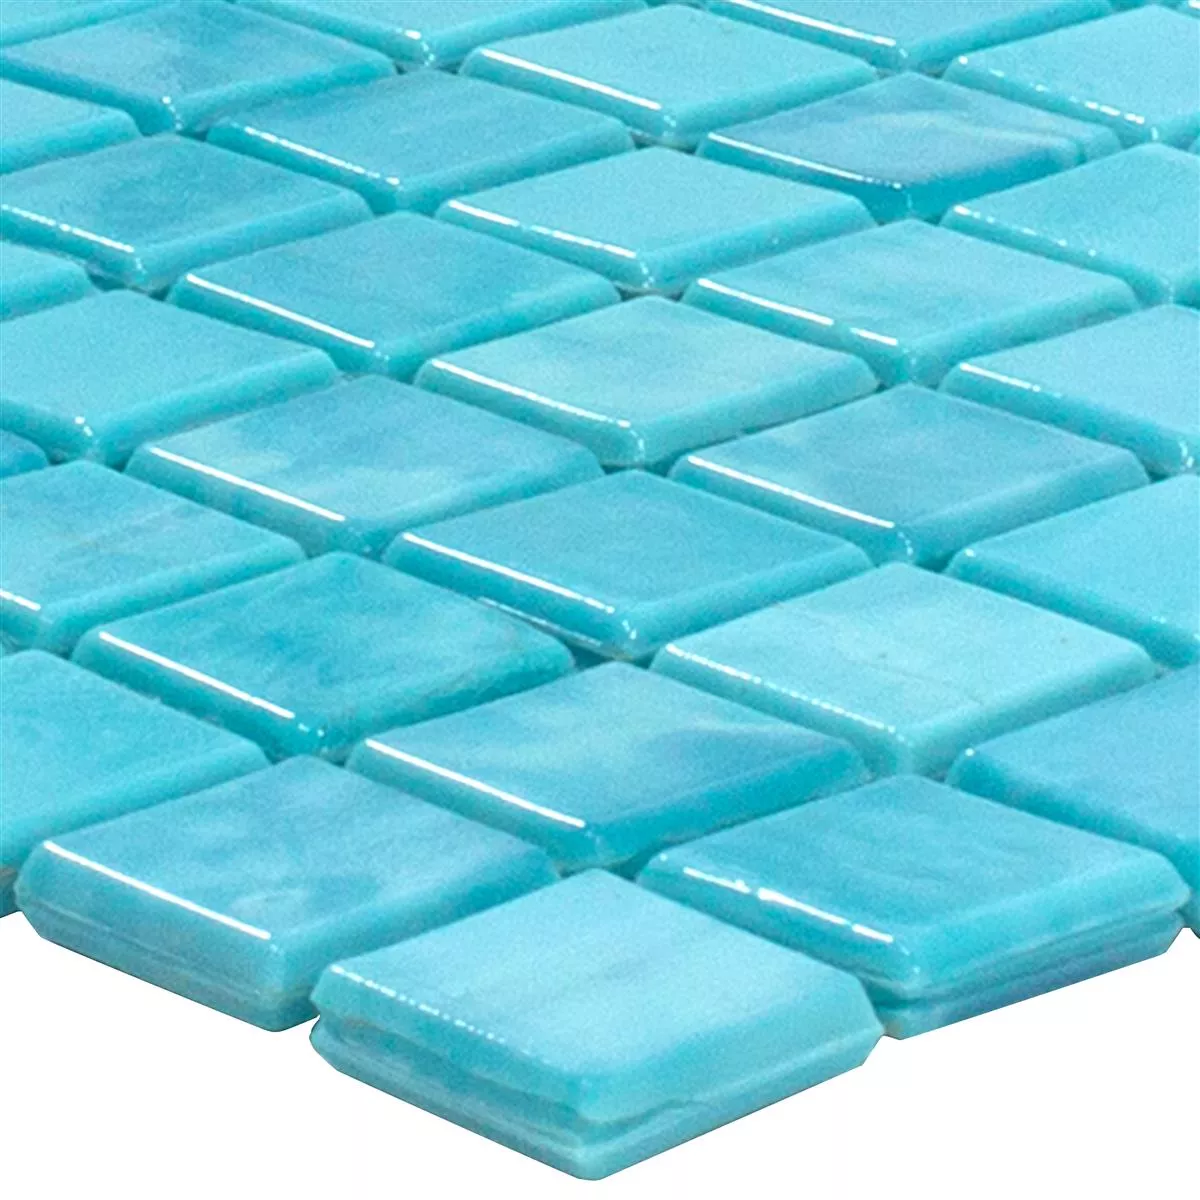 Sample Glass Mosaic Tiles Seaside Cyan